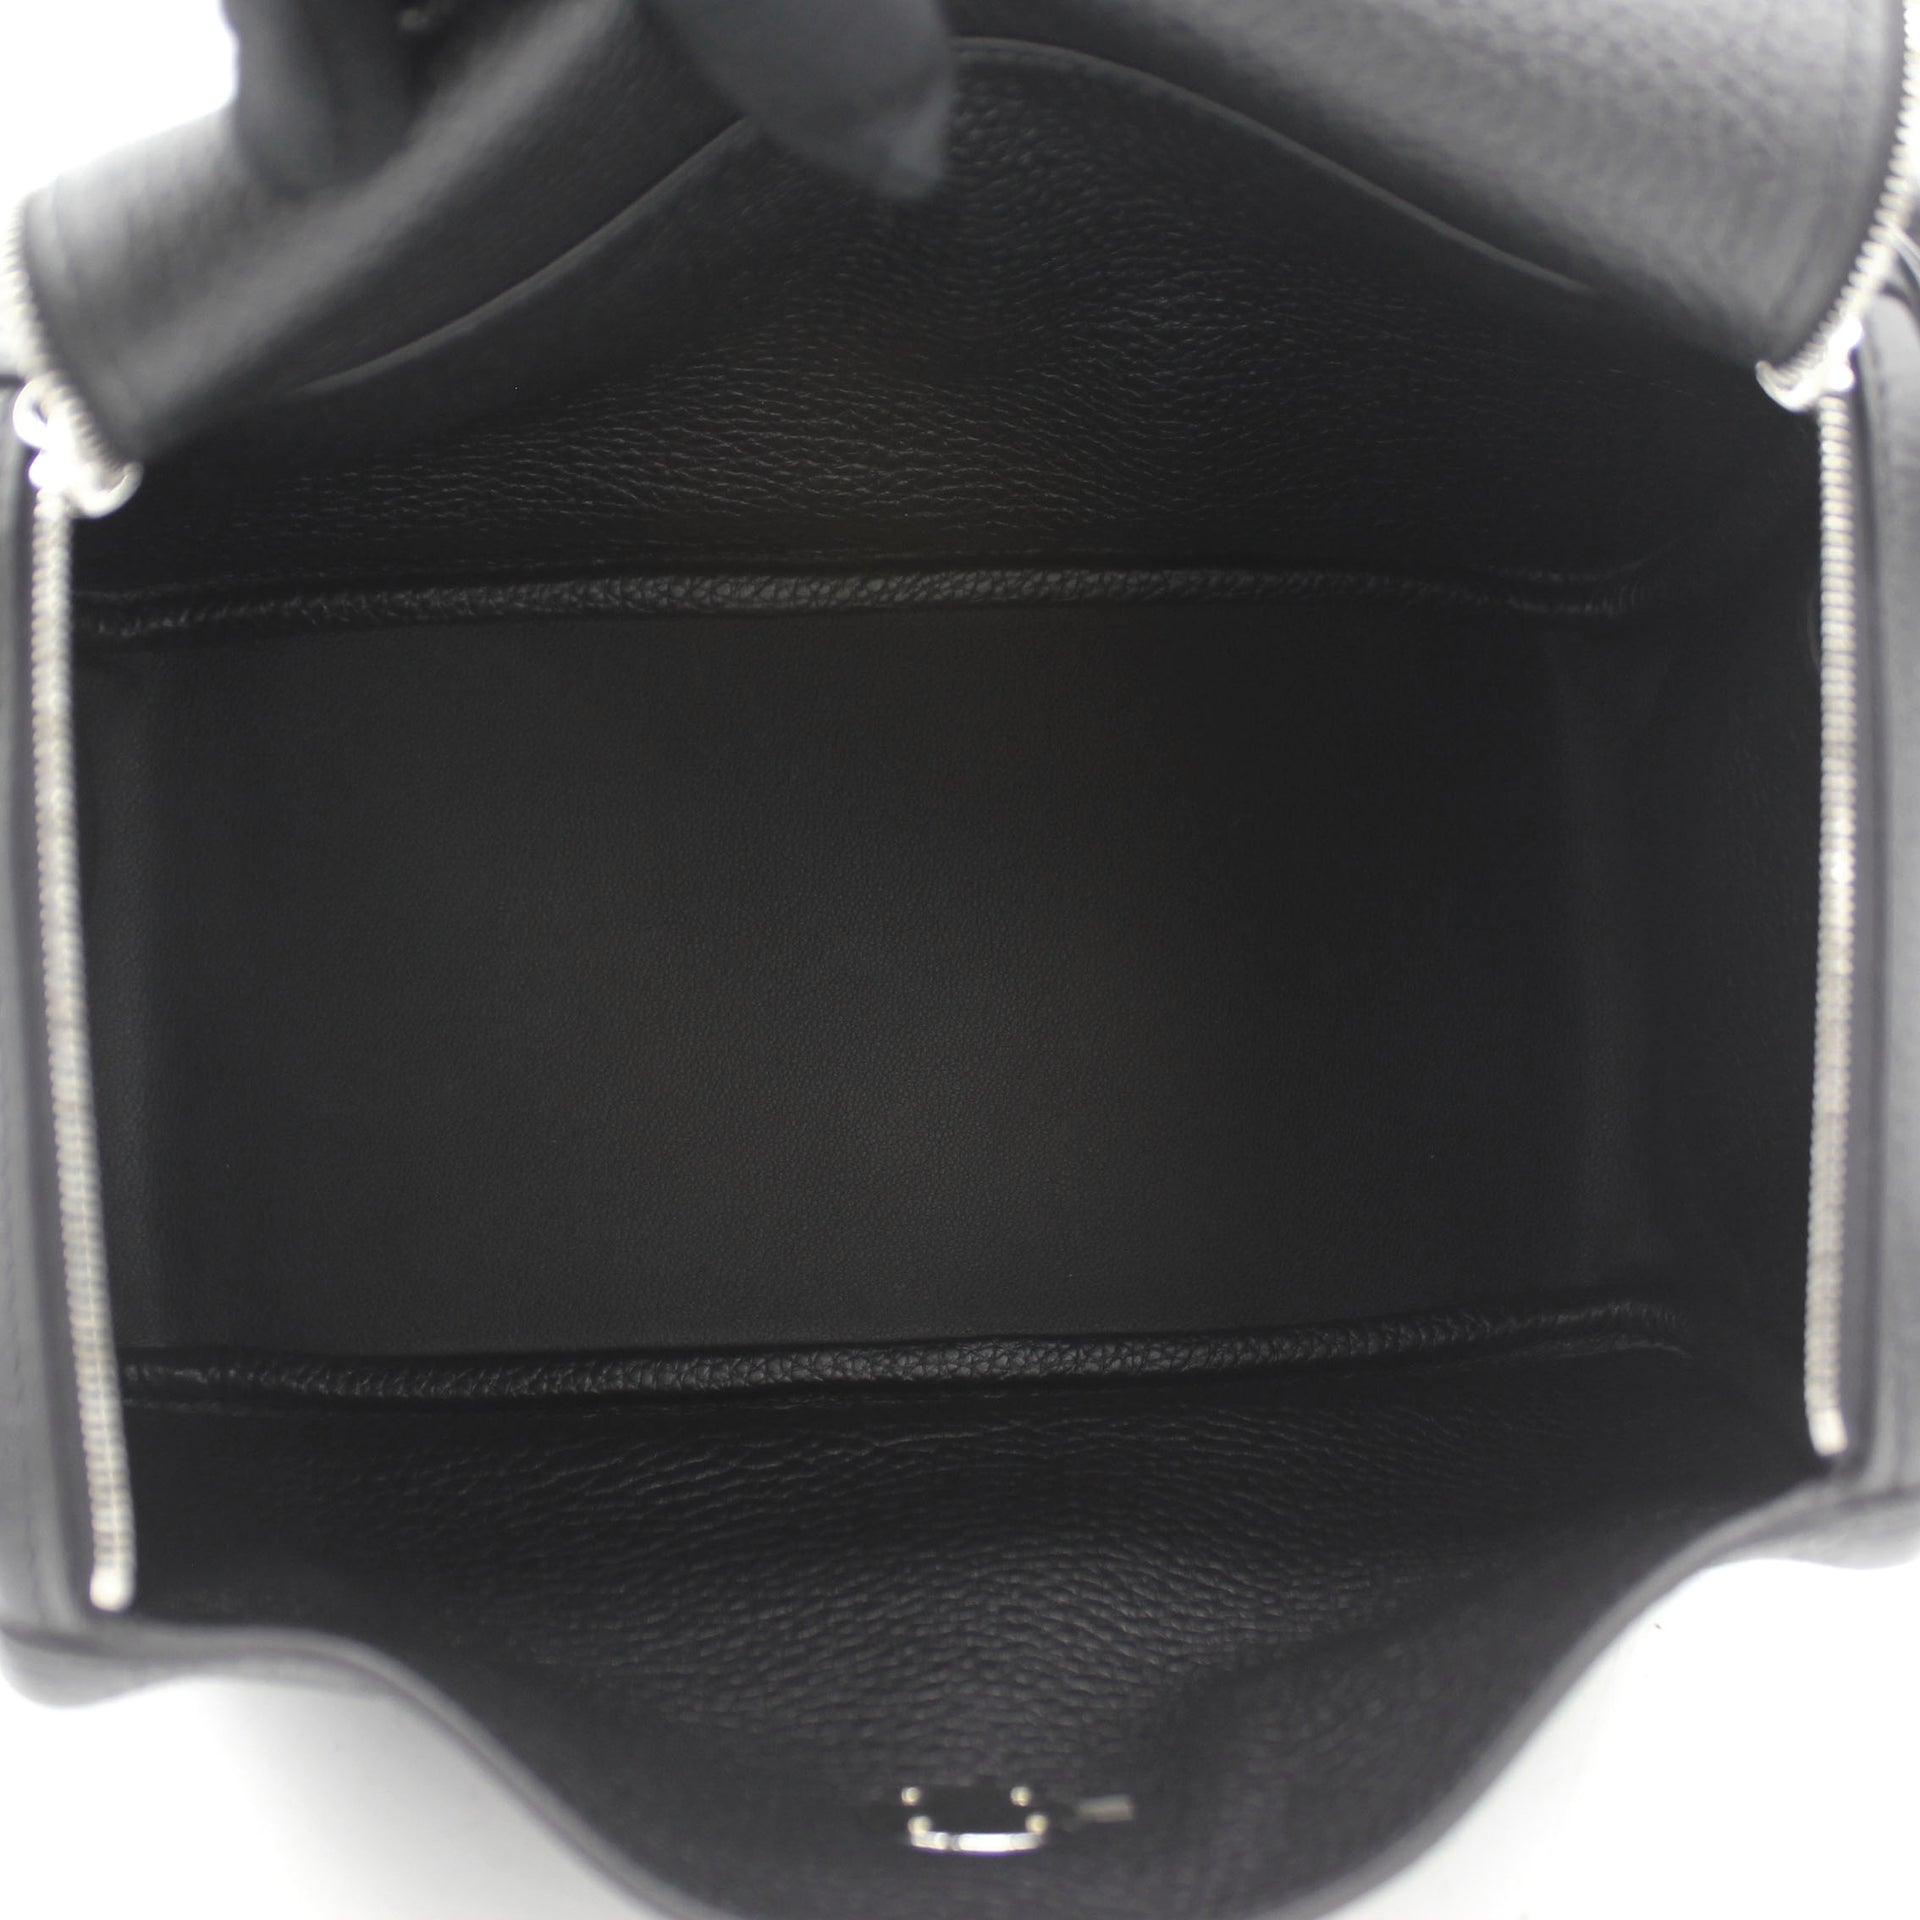 Hermes Picotin or Hermes Lindy - Leather Shoulder Strap